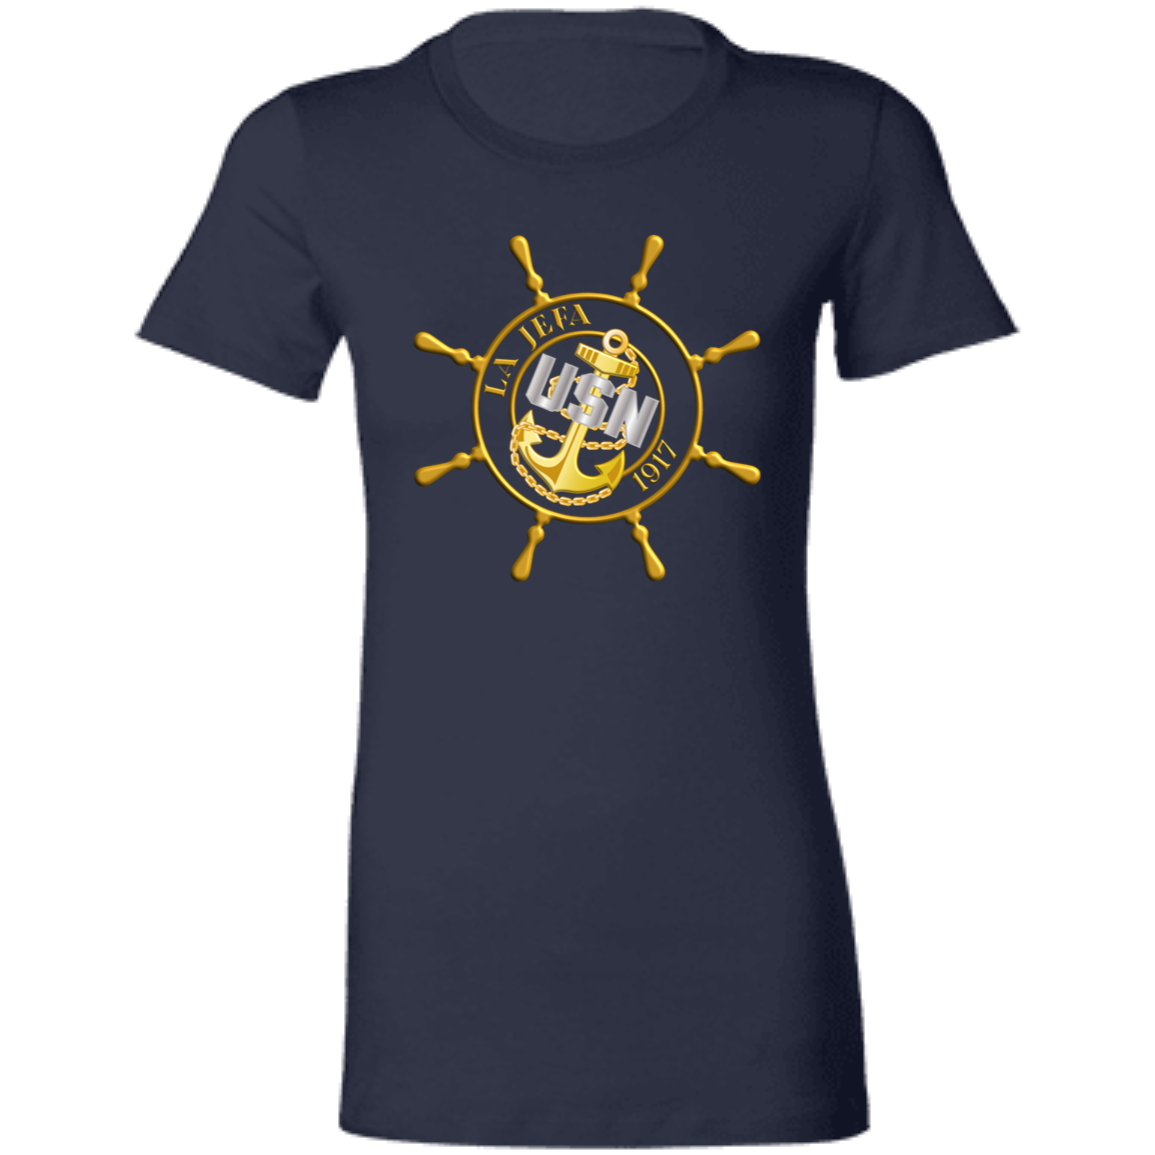 Ships Wheel Jefa Ladies' Favorite T-Shirt